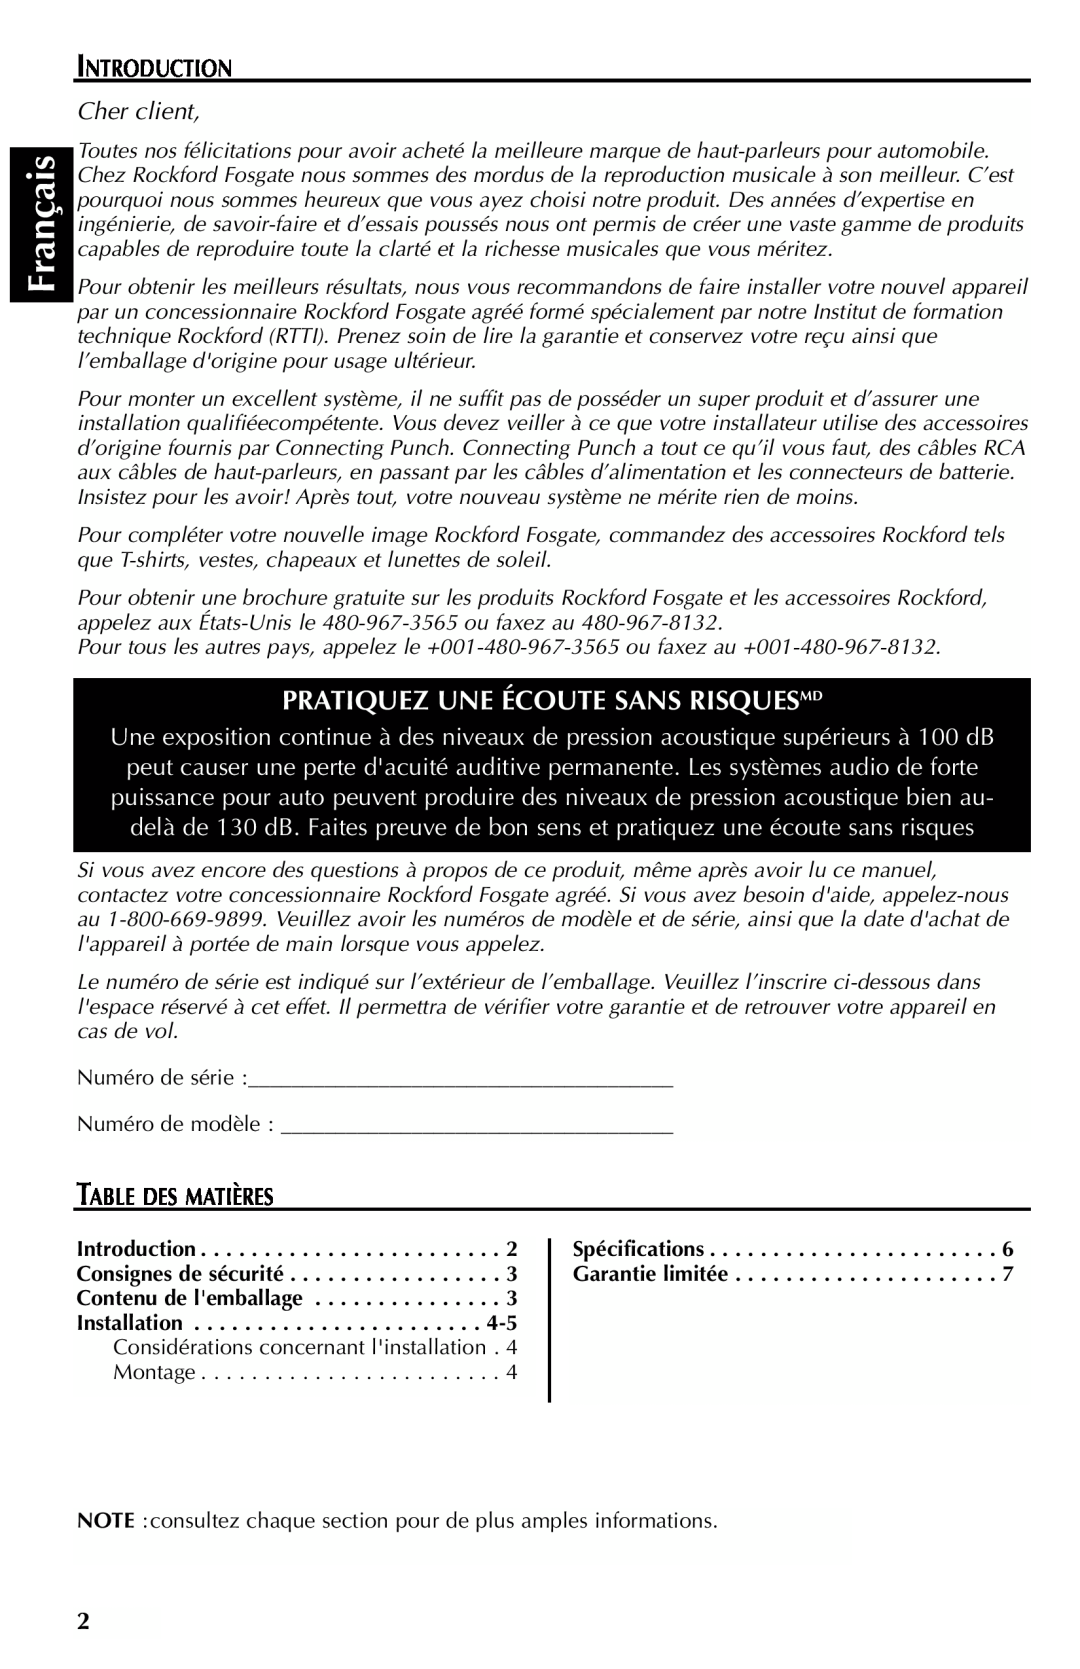 Rockford Fosgate FRC3369 Français, Pratiquez Une Écoute Sans Risquesmd, Introduction, Cher client, Table Des Matières 